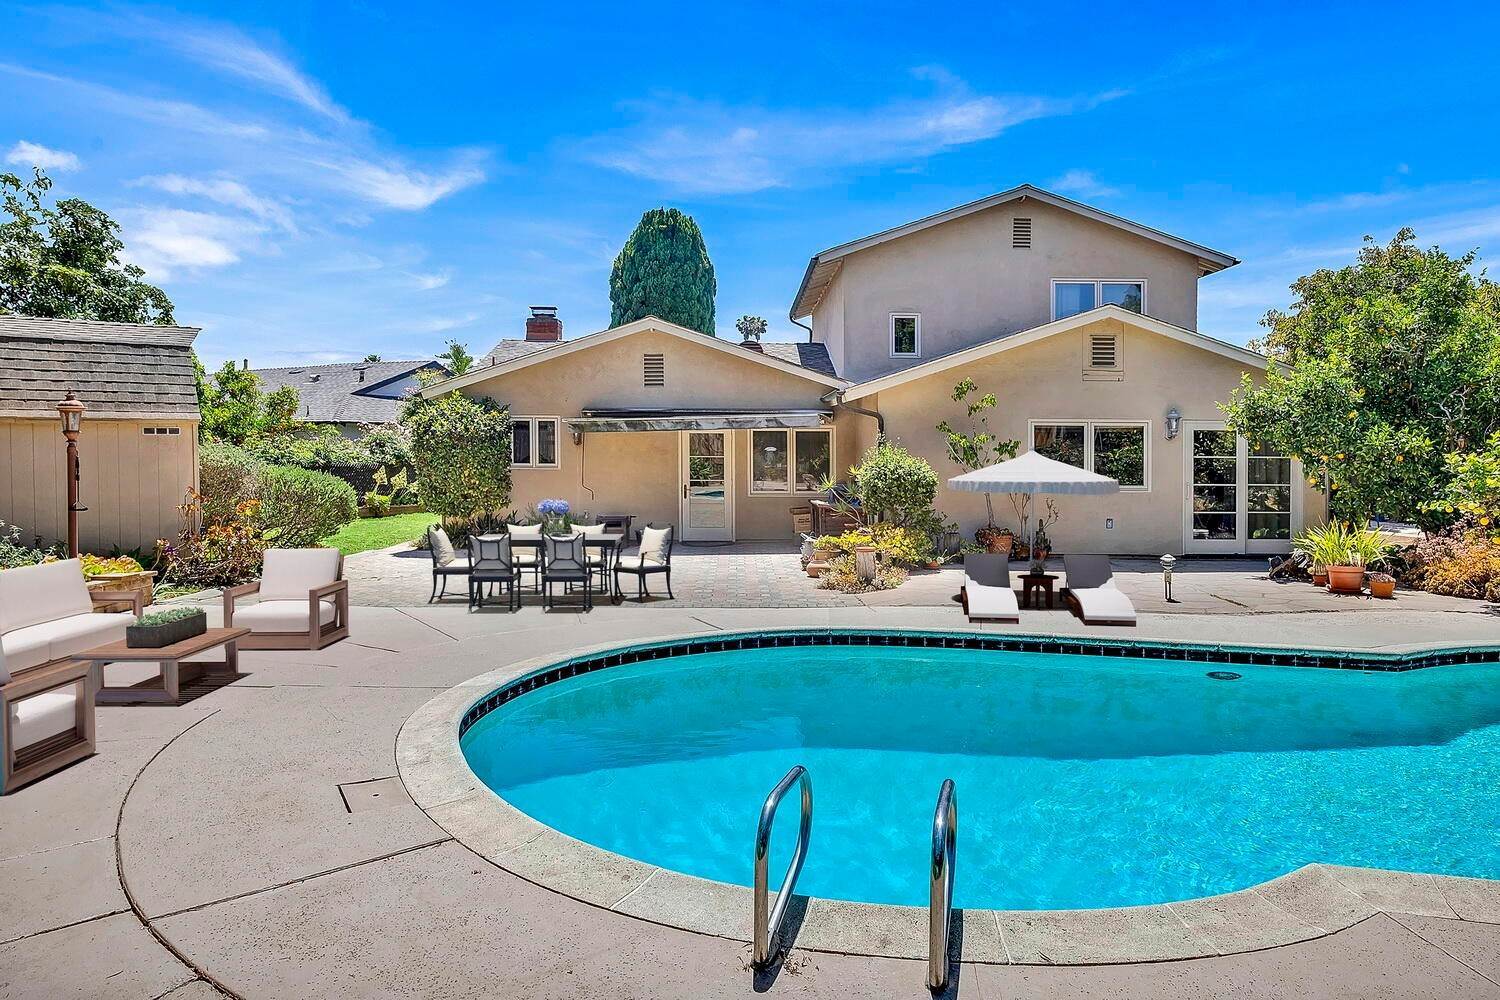 1. Estate for Sale at 104 San Federico Avenue Santa Barbara, California 93111 United States